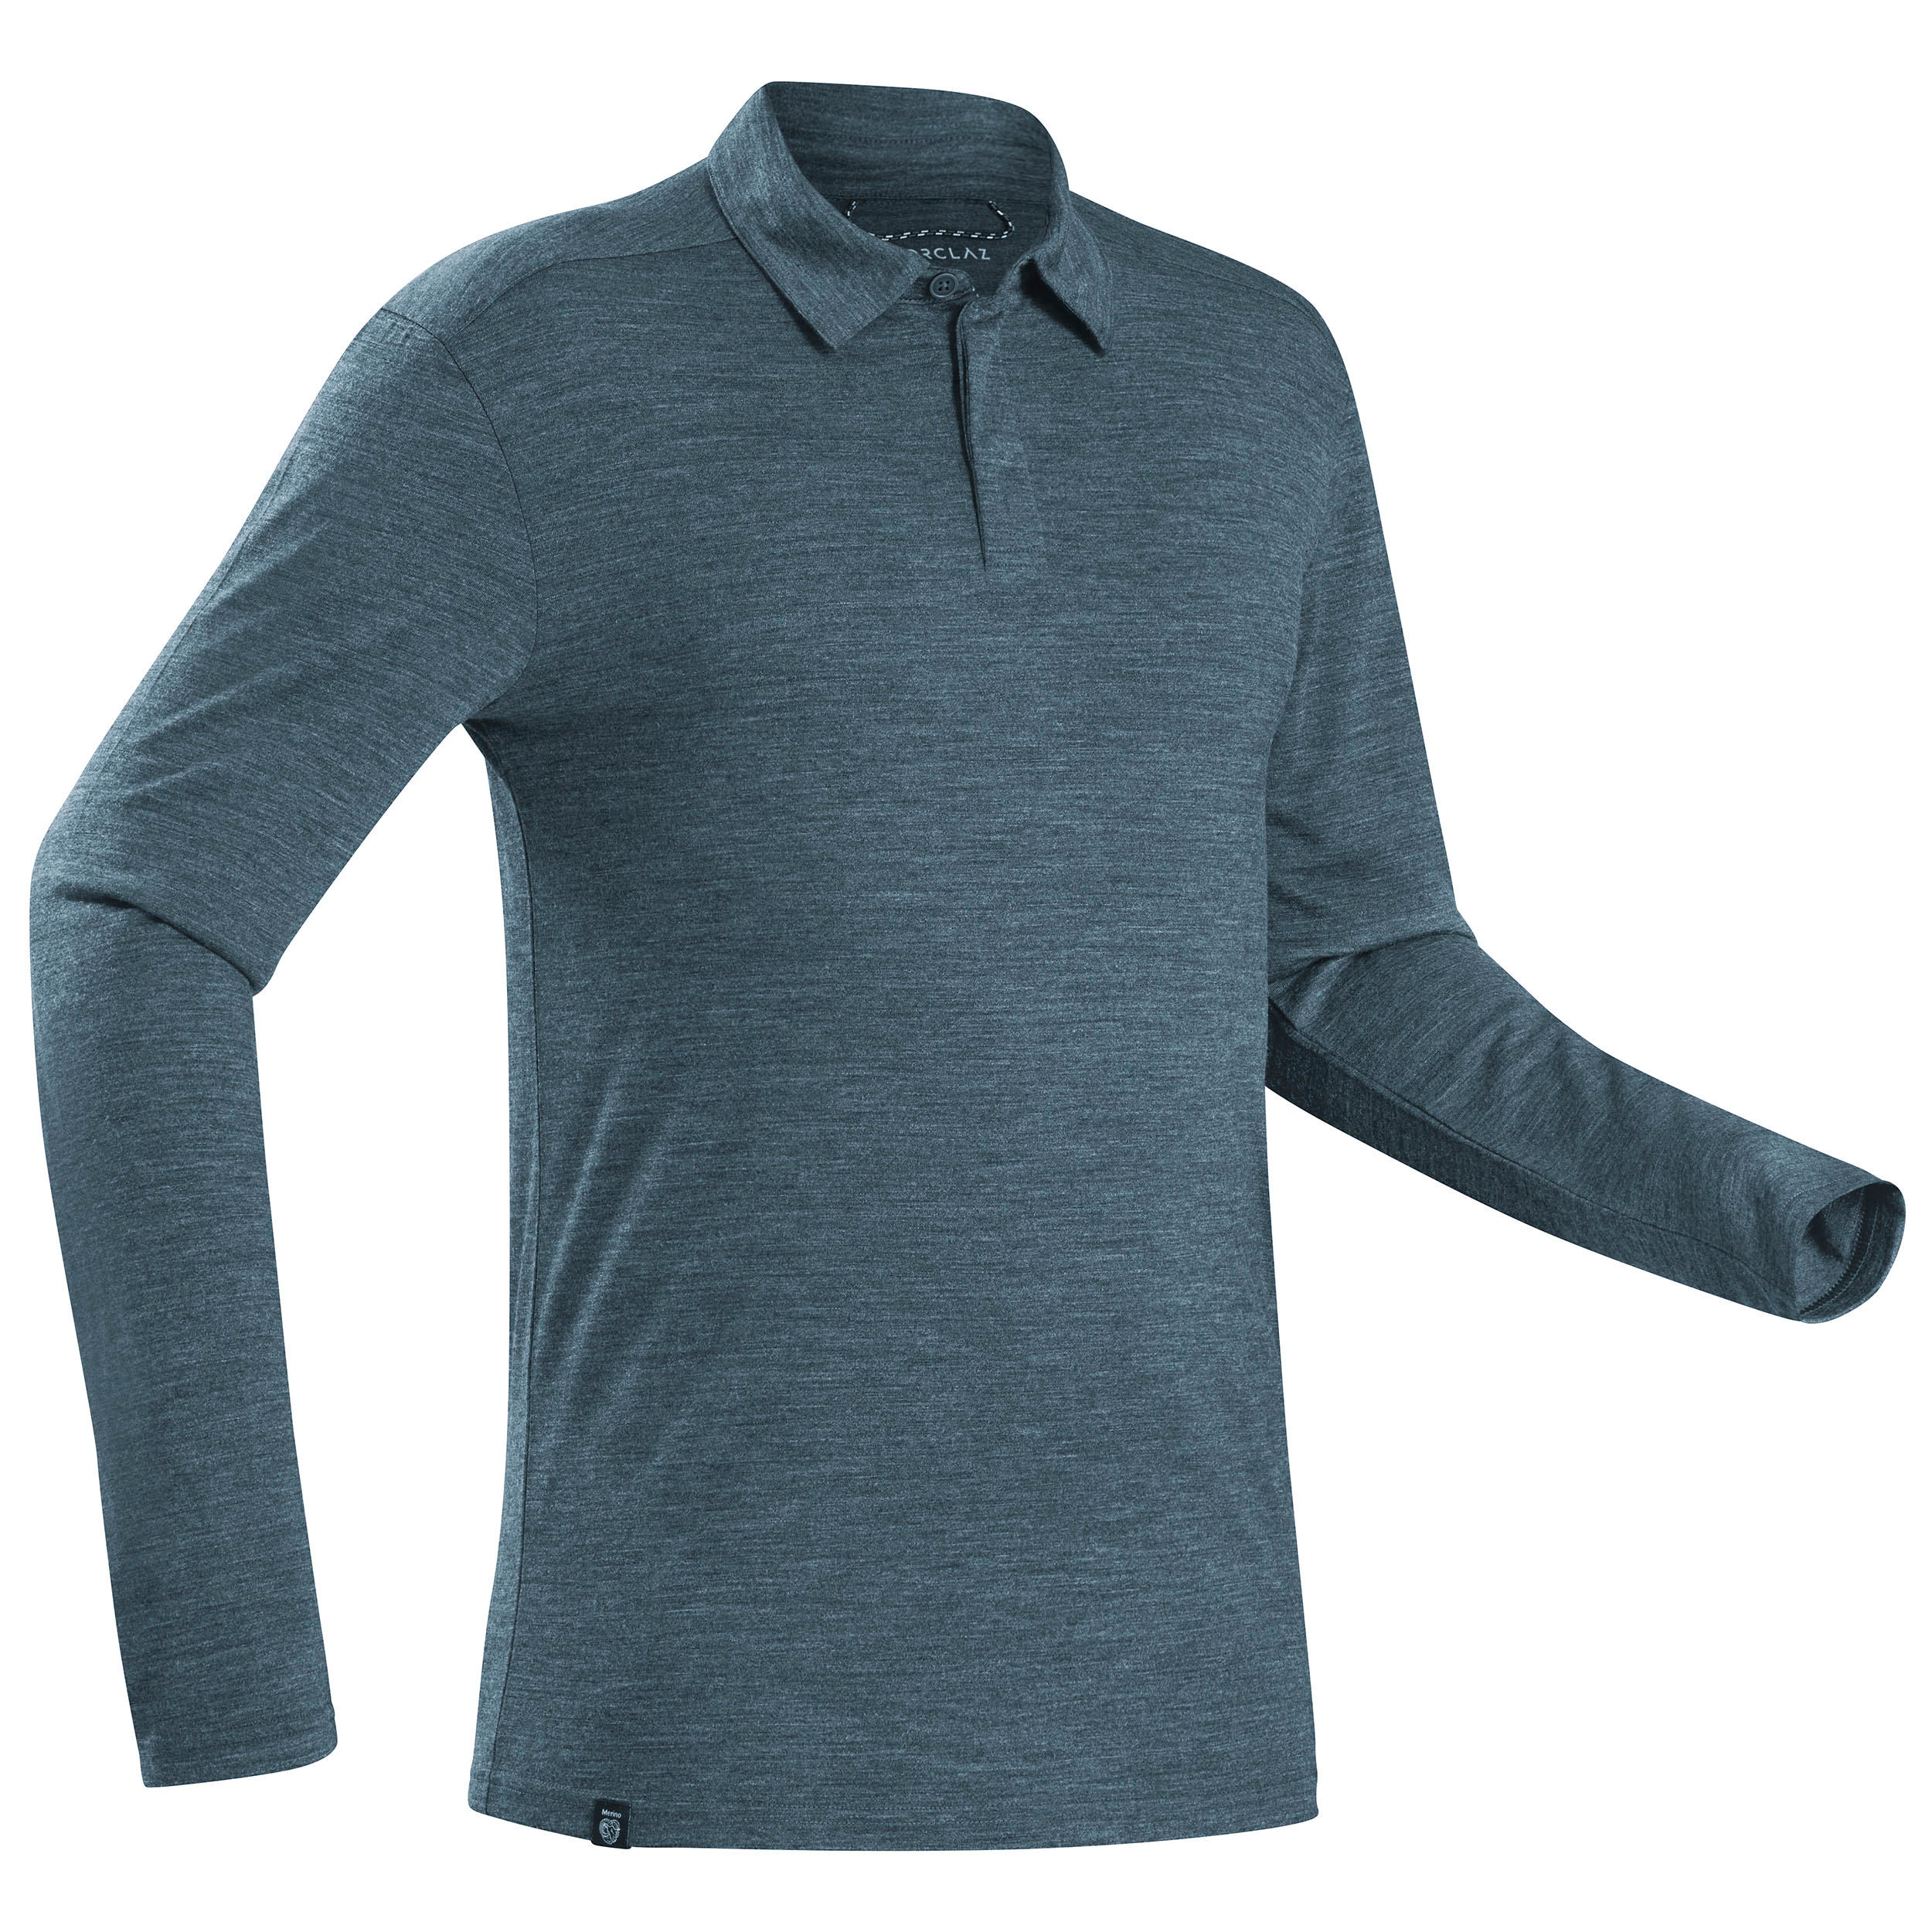 FORCLAZ Men’s Long-sleeved Travel Trekking Merino Wool Polo Shirt - TRAVEL 500 Blue